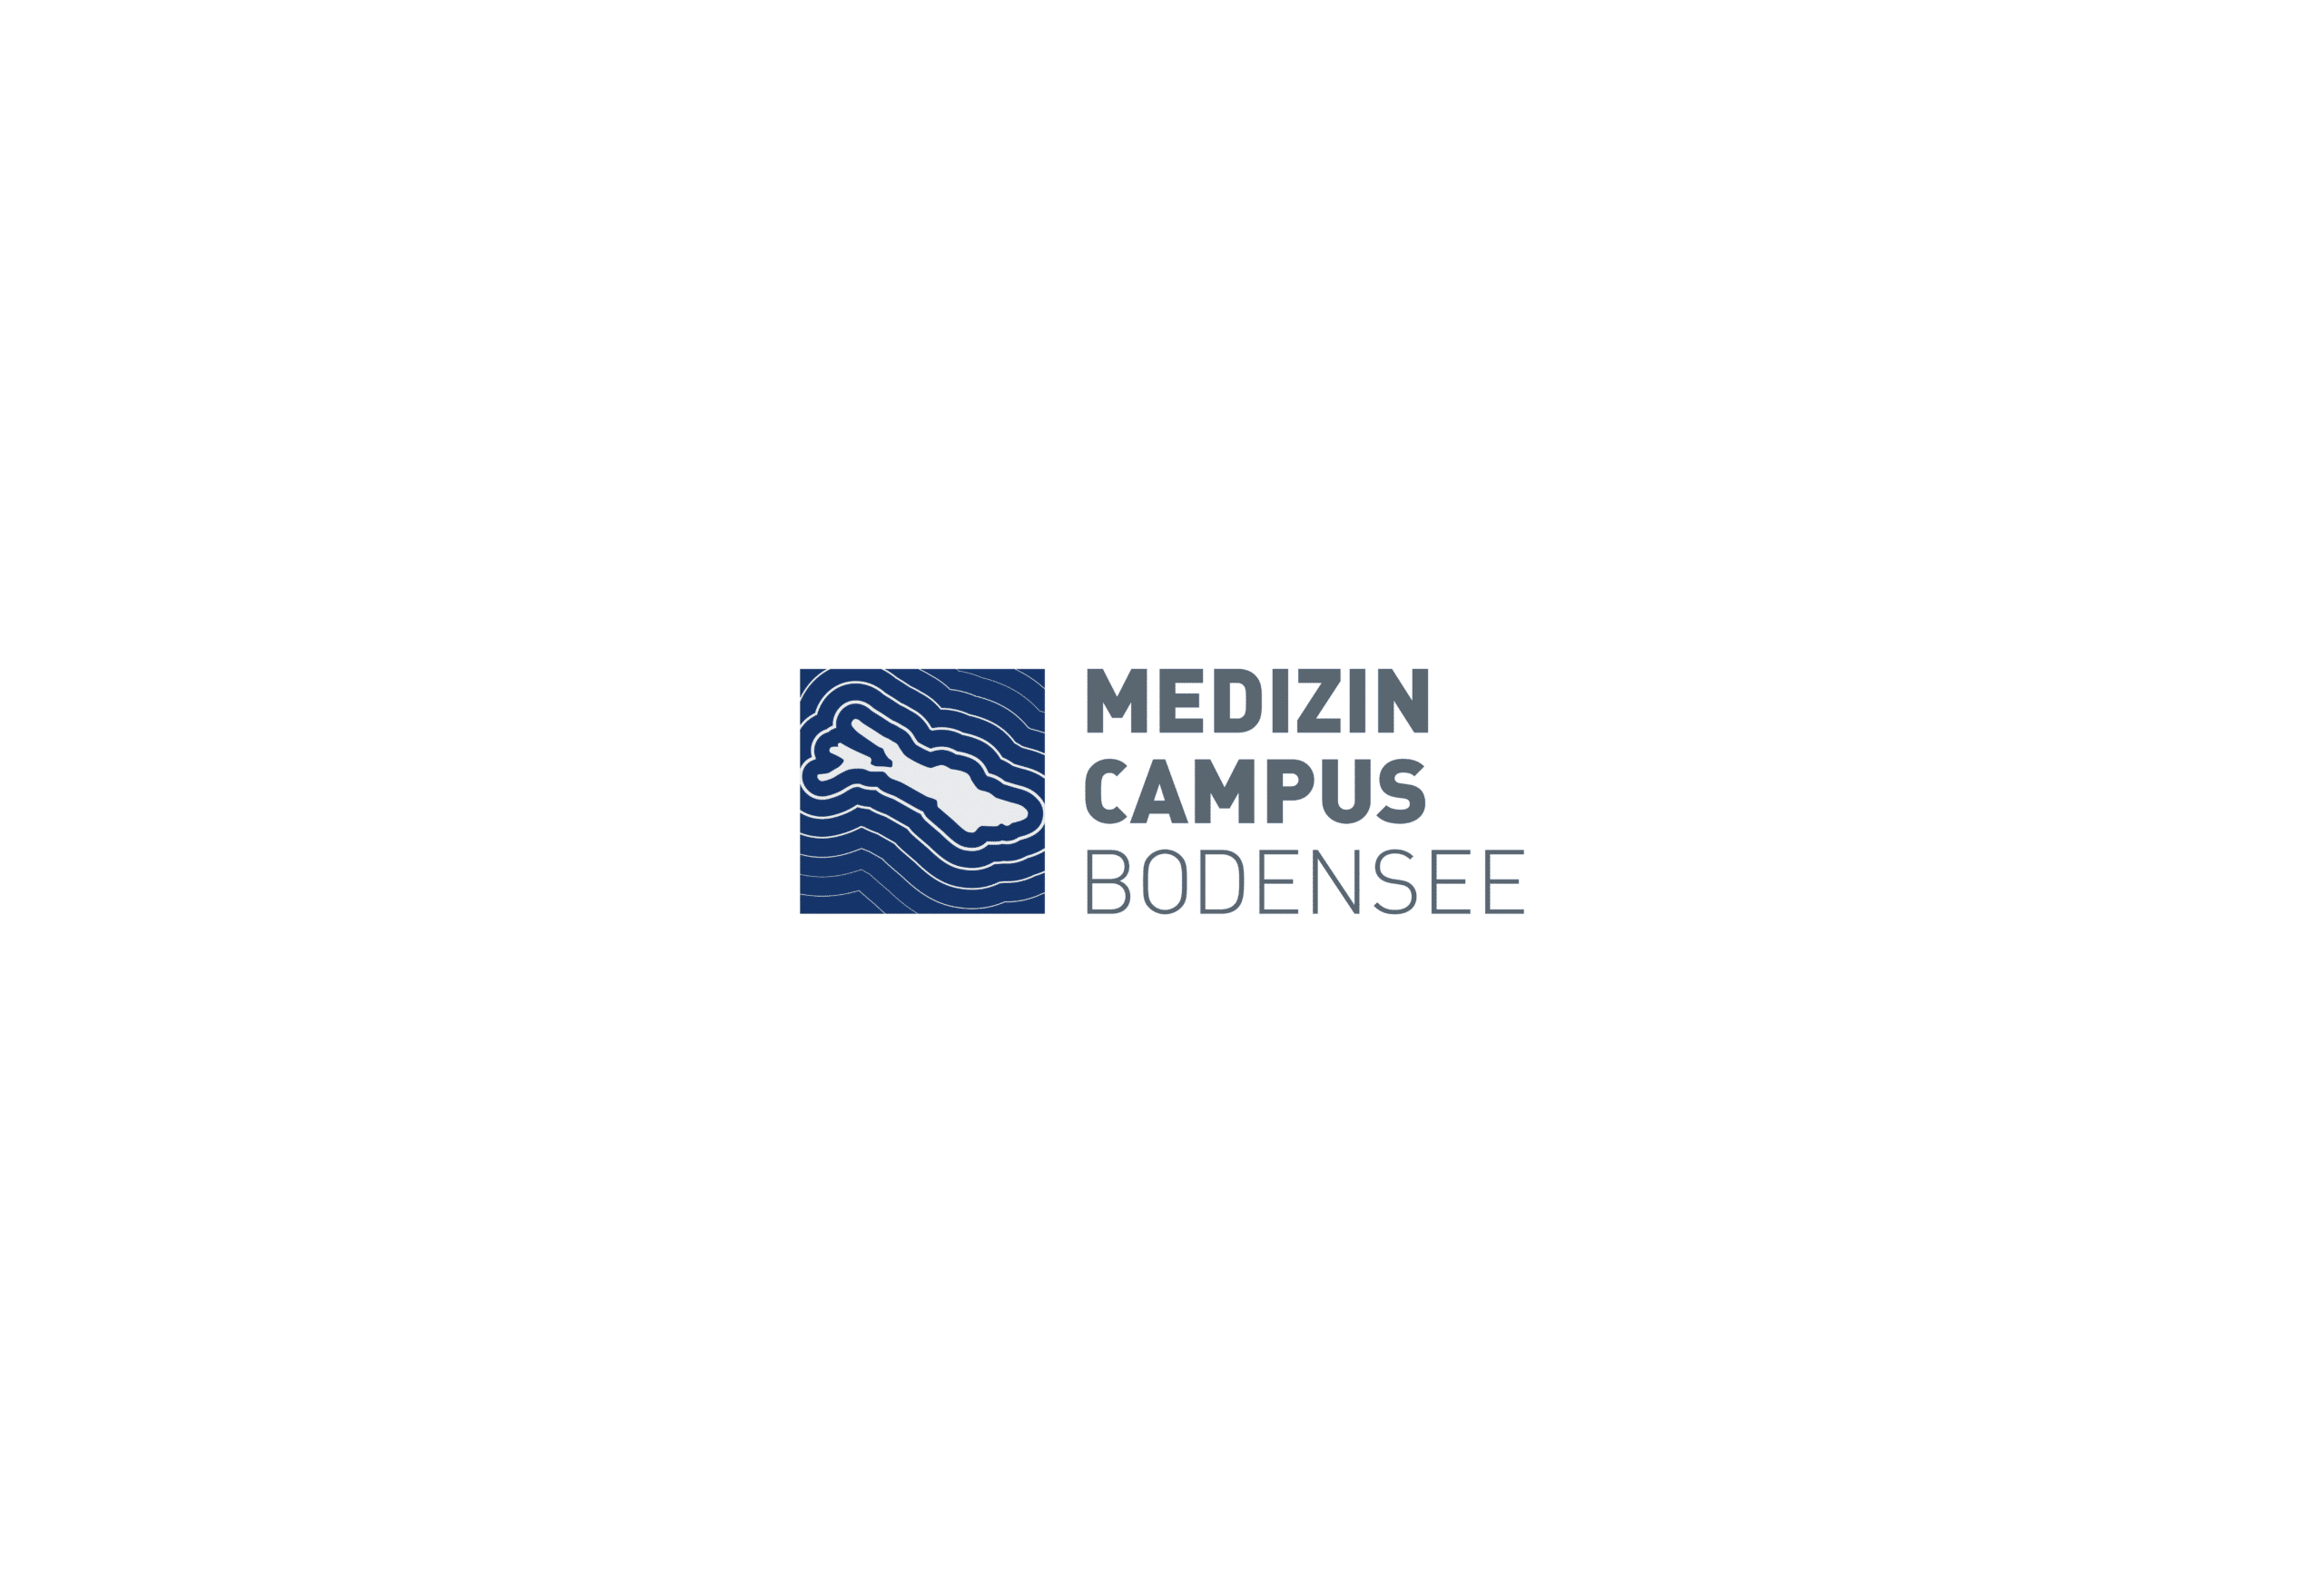 Medizin Campus Bodensee Markenerlebnisstrategie